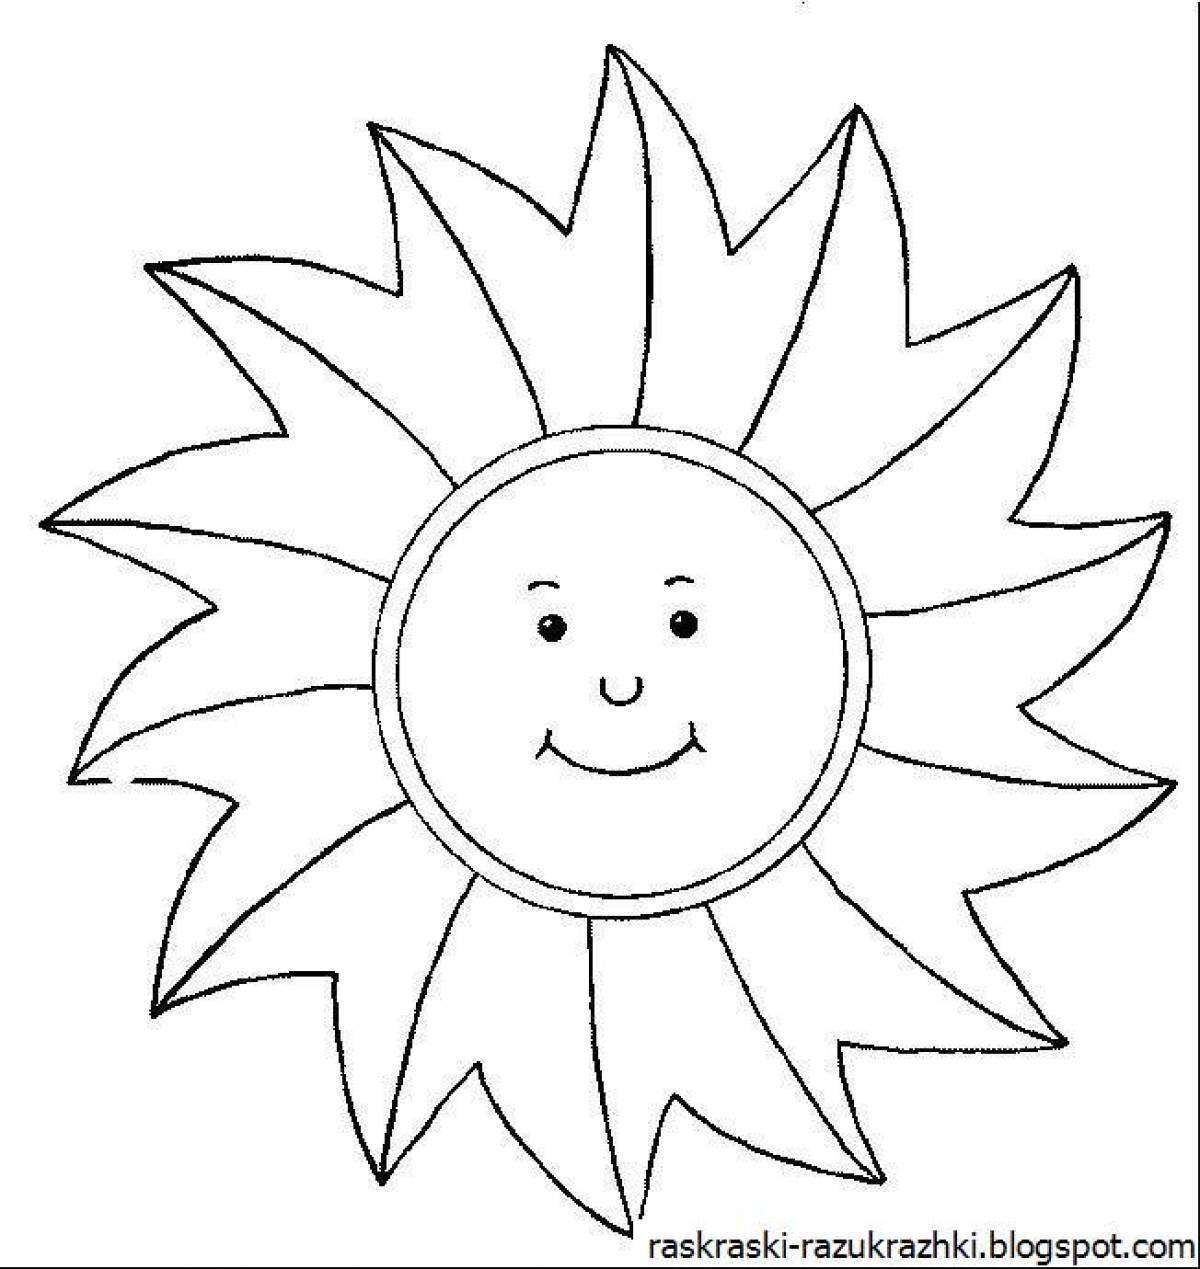 Fantastic sun coloring book for kids